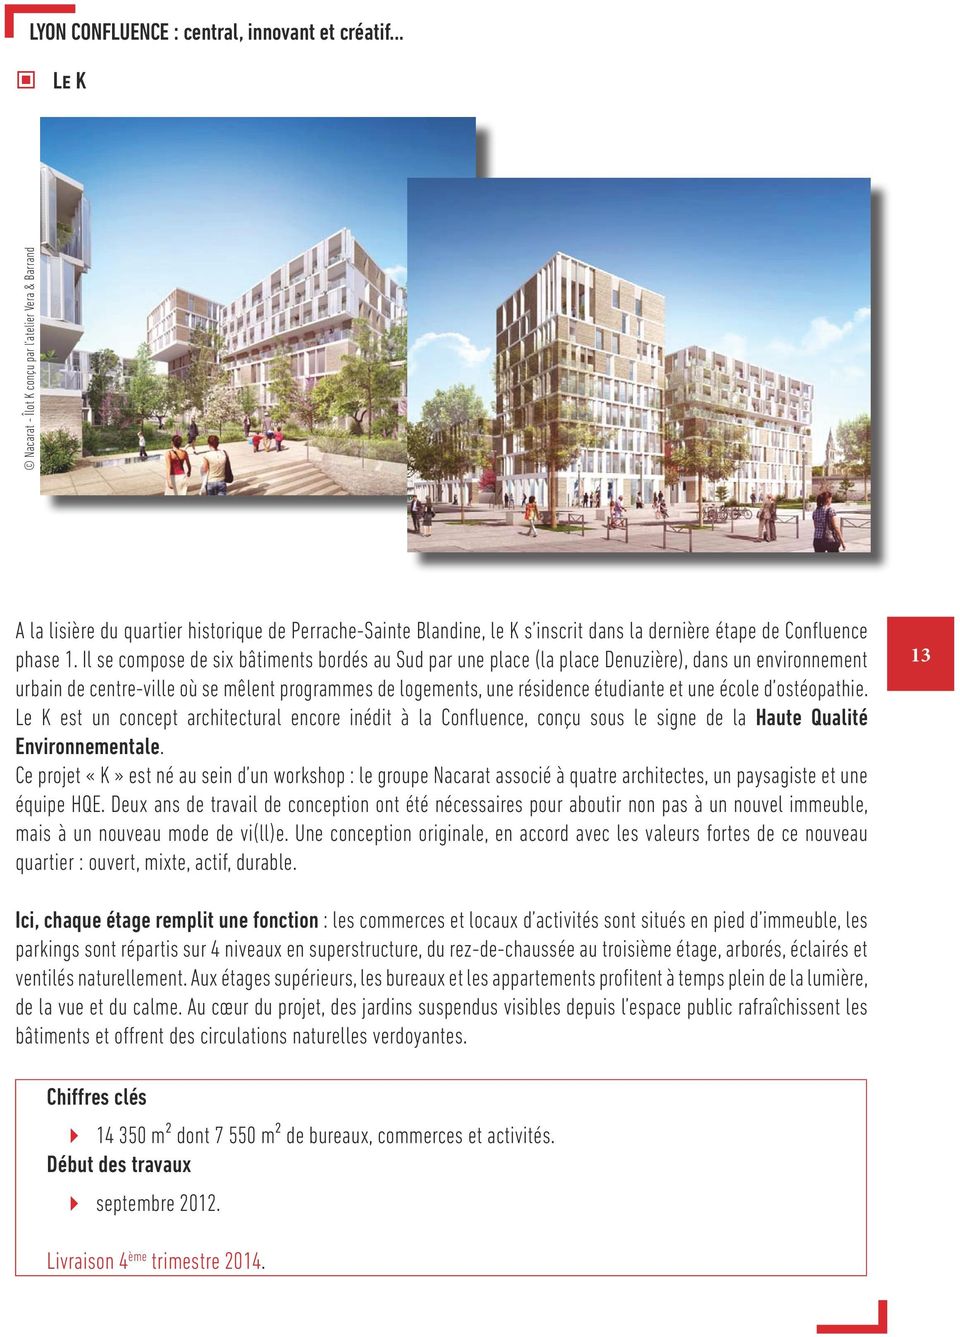 Il se compose de six bâtiments bordés au Sud par une place (la place Denuzière), dans un environnement urbain de centre-ville où se mêlent programmes de logements, une résidence étudiante et une